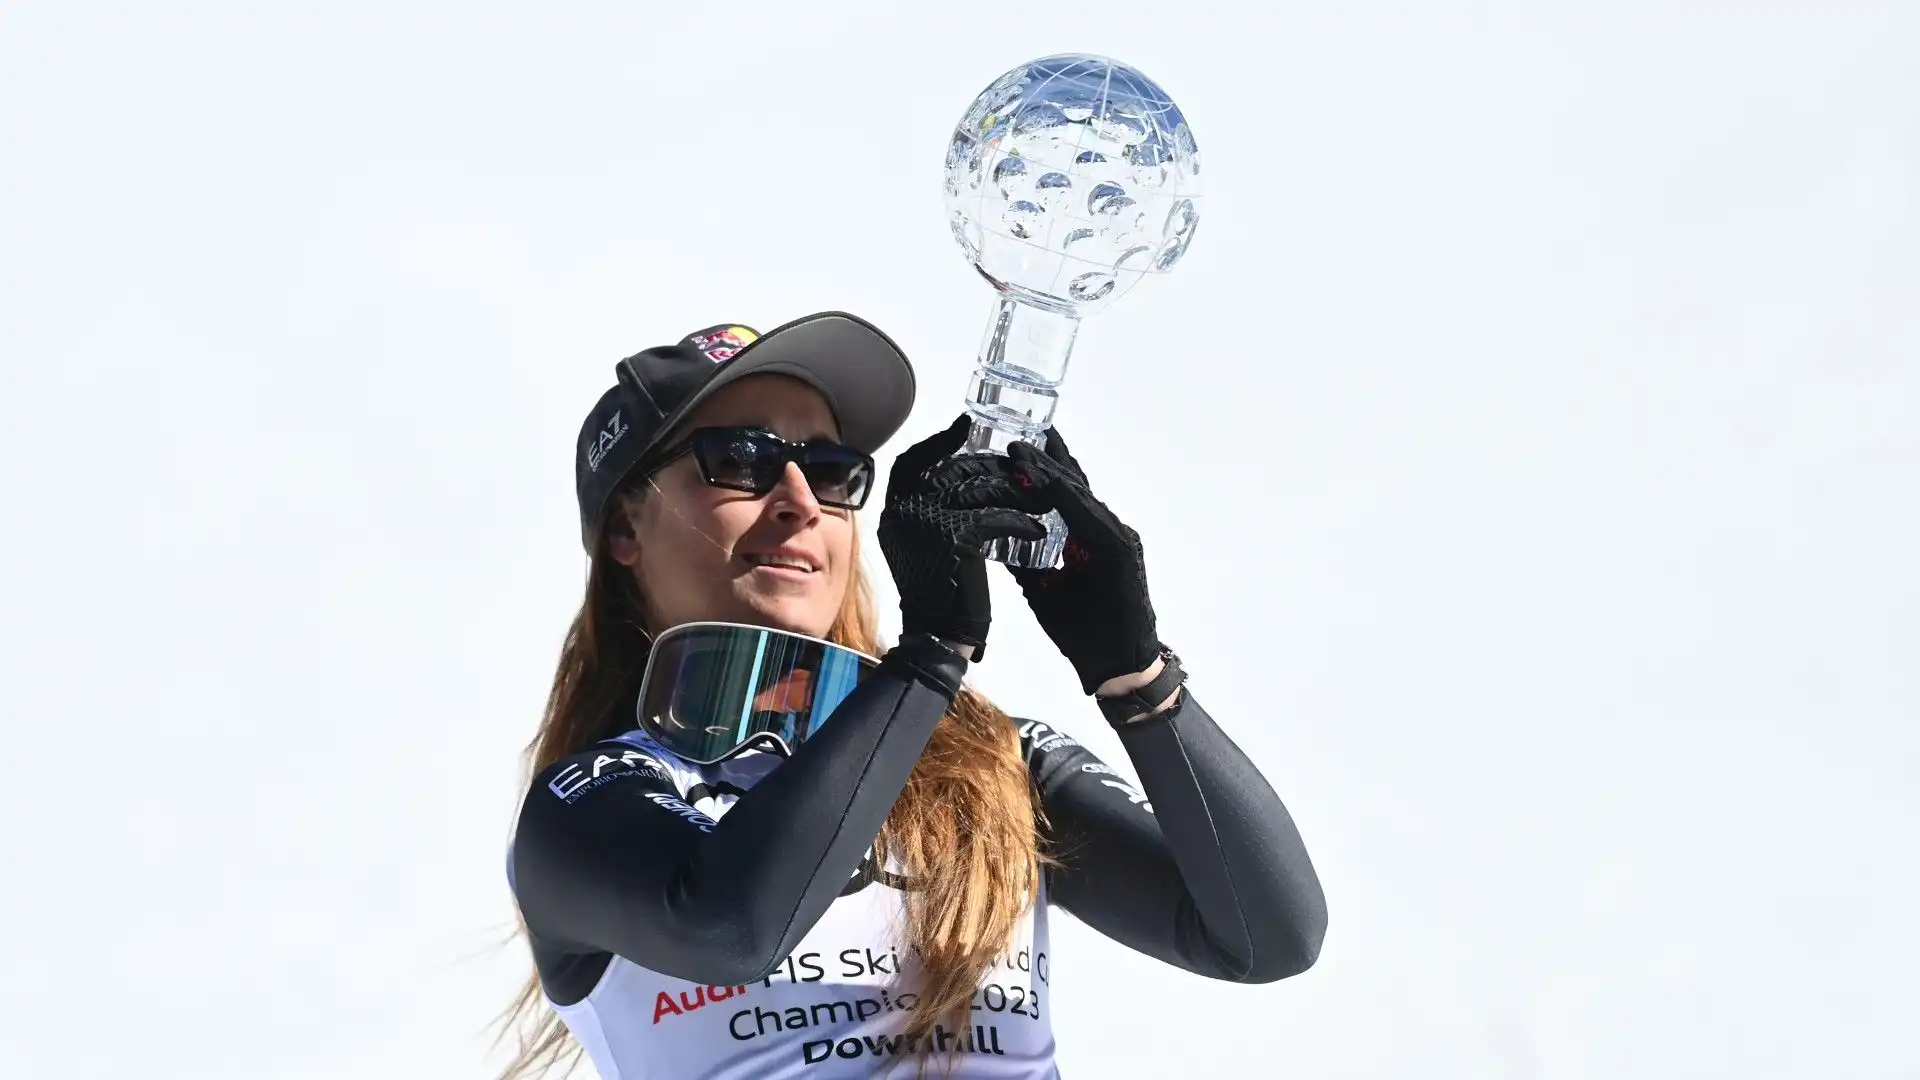 La sciatrice di Bergamo, già vincitrice della coppa di specialità, ha concluso al secondo posto nella discesa femminile di Soldeu